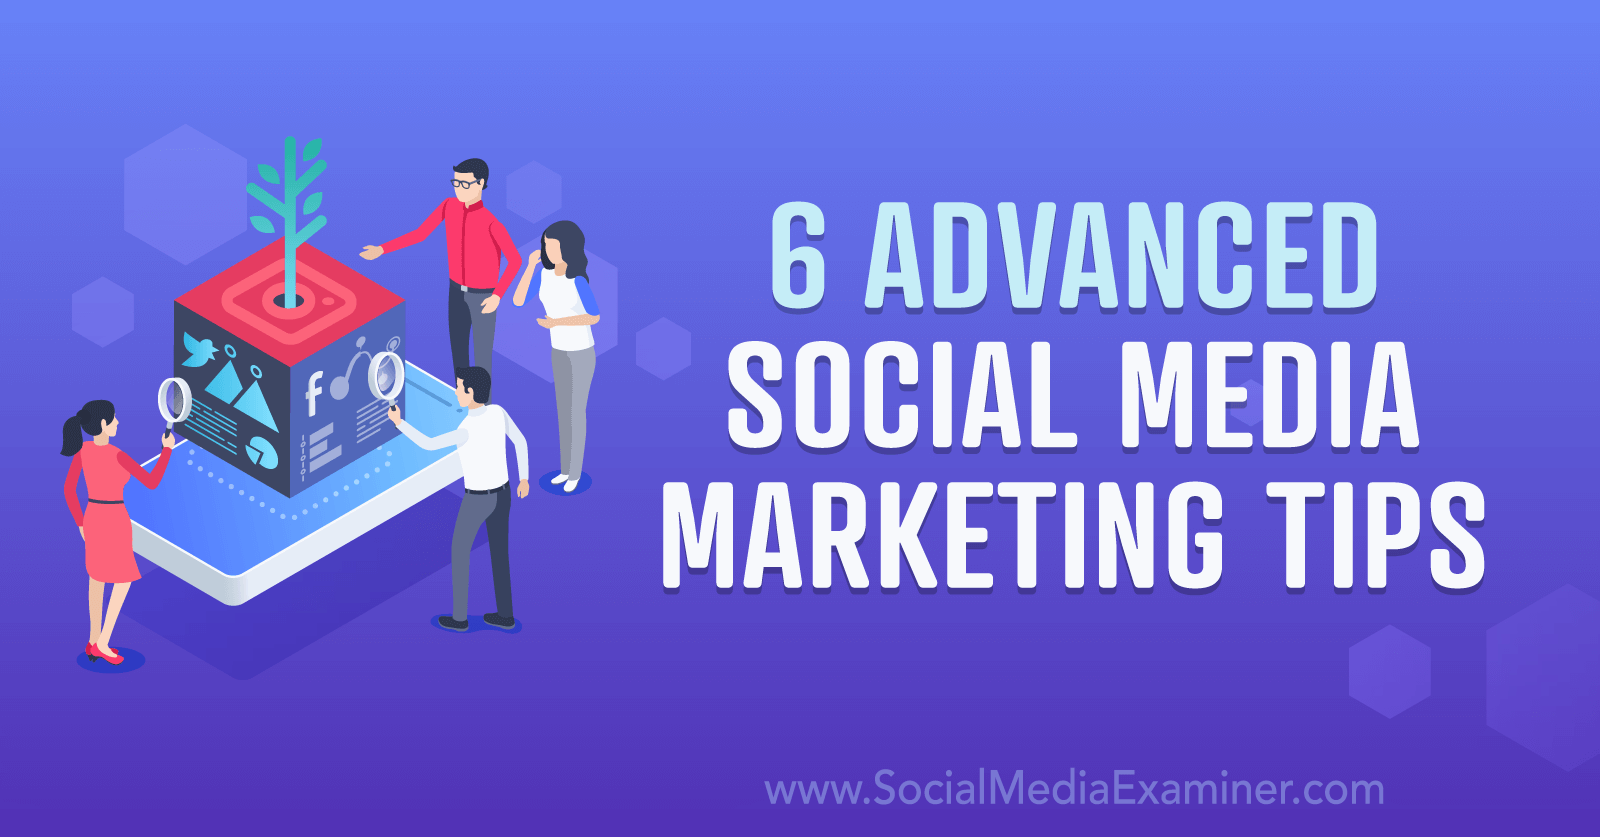 6 Advanced Social Media Marketing Tips by Social Media Examiner